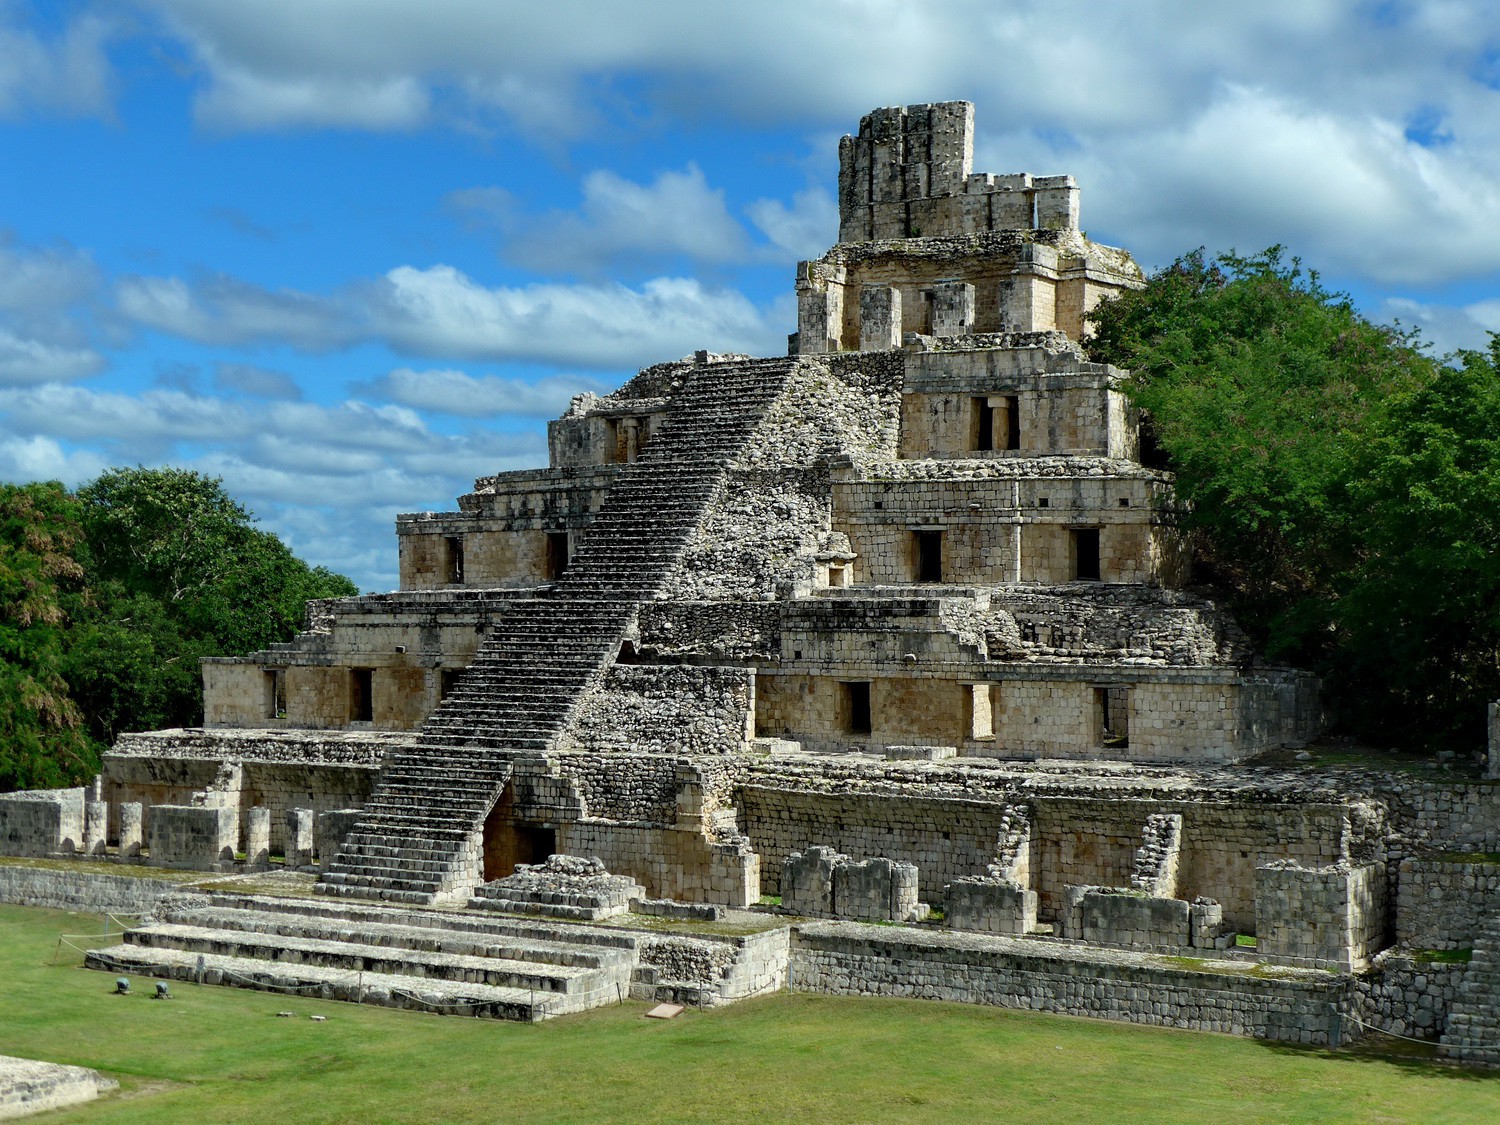 Edificio de los Cinco Pisos (Five-Store Building) of the Maya site Edzná